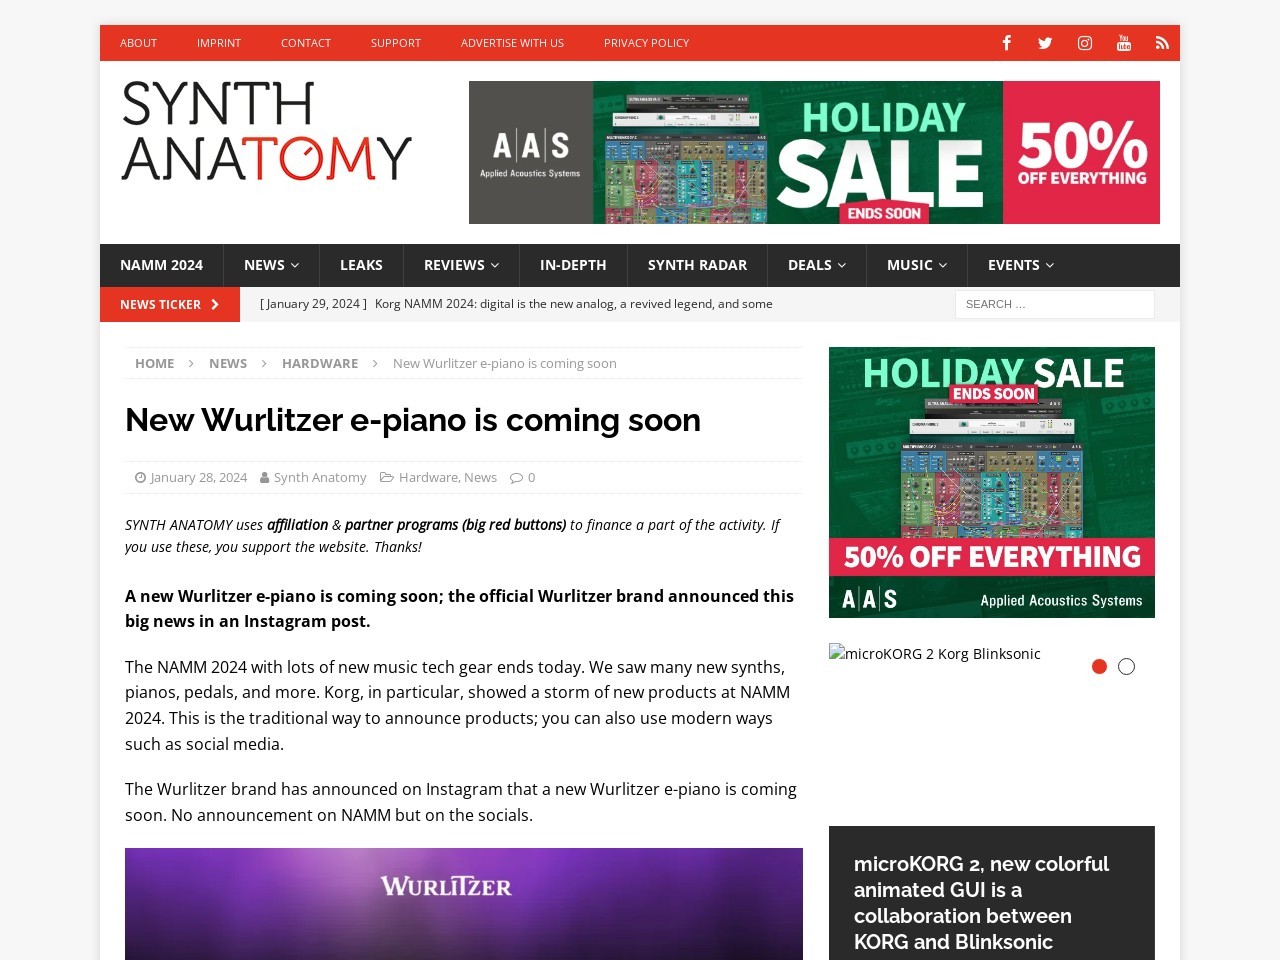 New Wurlitzer e-piano is coming soon